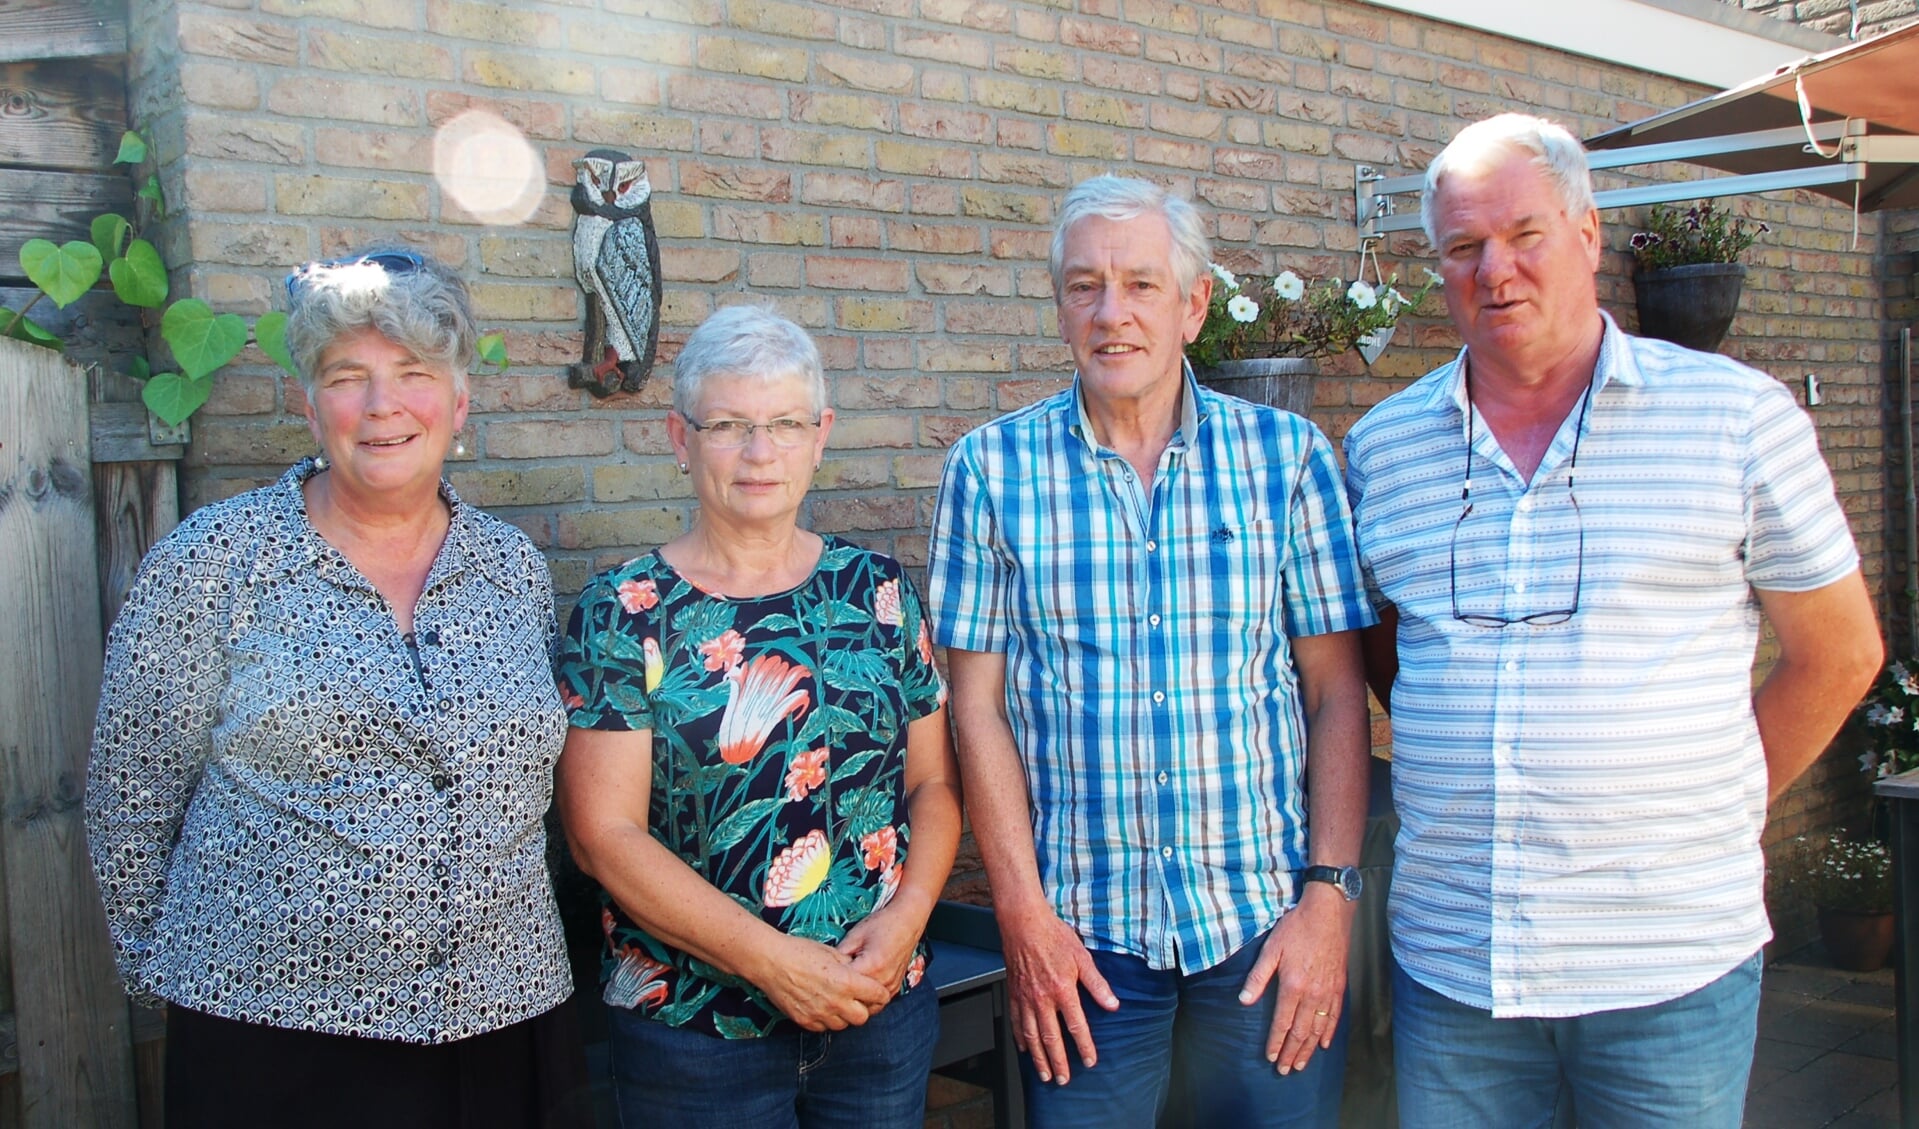 De vier docenten met een schat aan ervaring. Vanaf links: Joke van Bommel, Marieke Lemmen, Harry Smits en Aloys Füchten. (foto: Jos Gröniger)